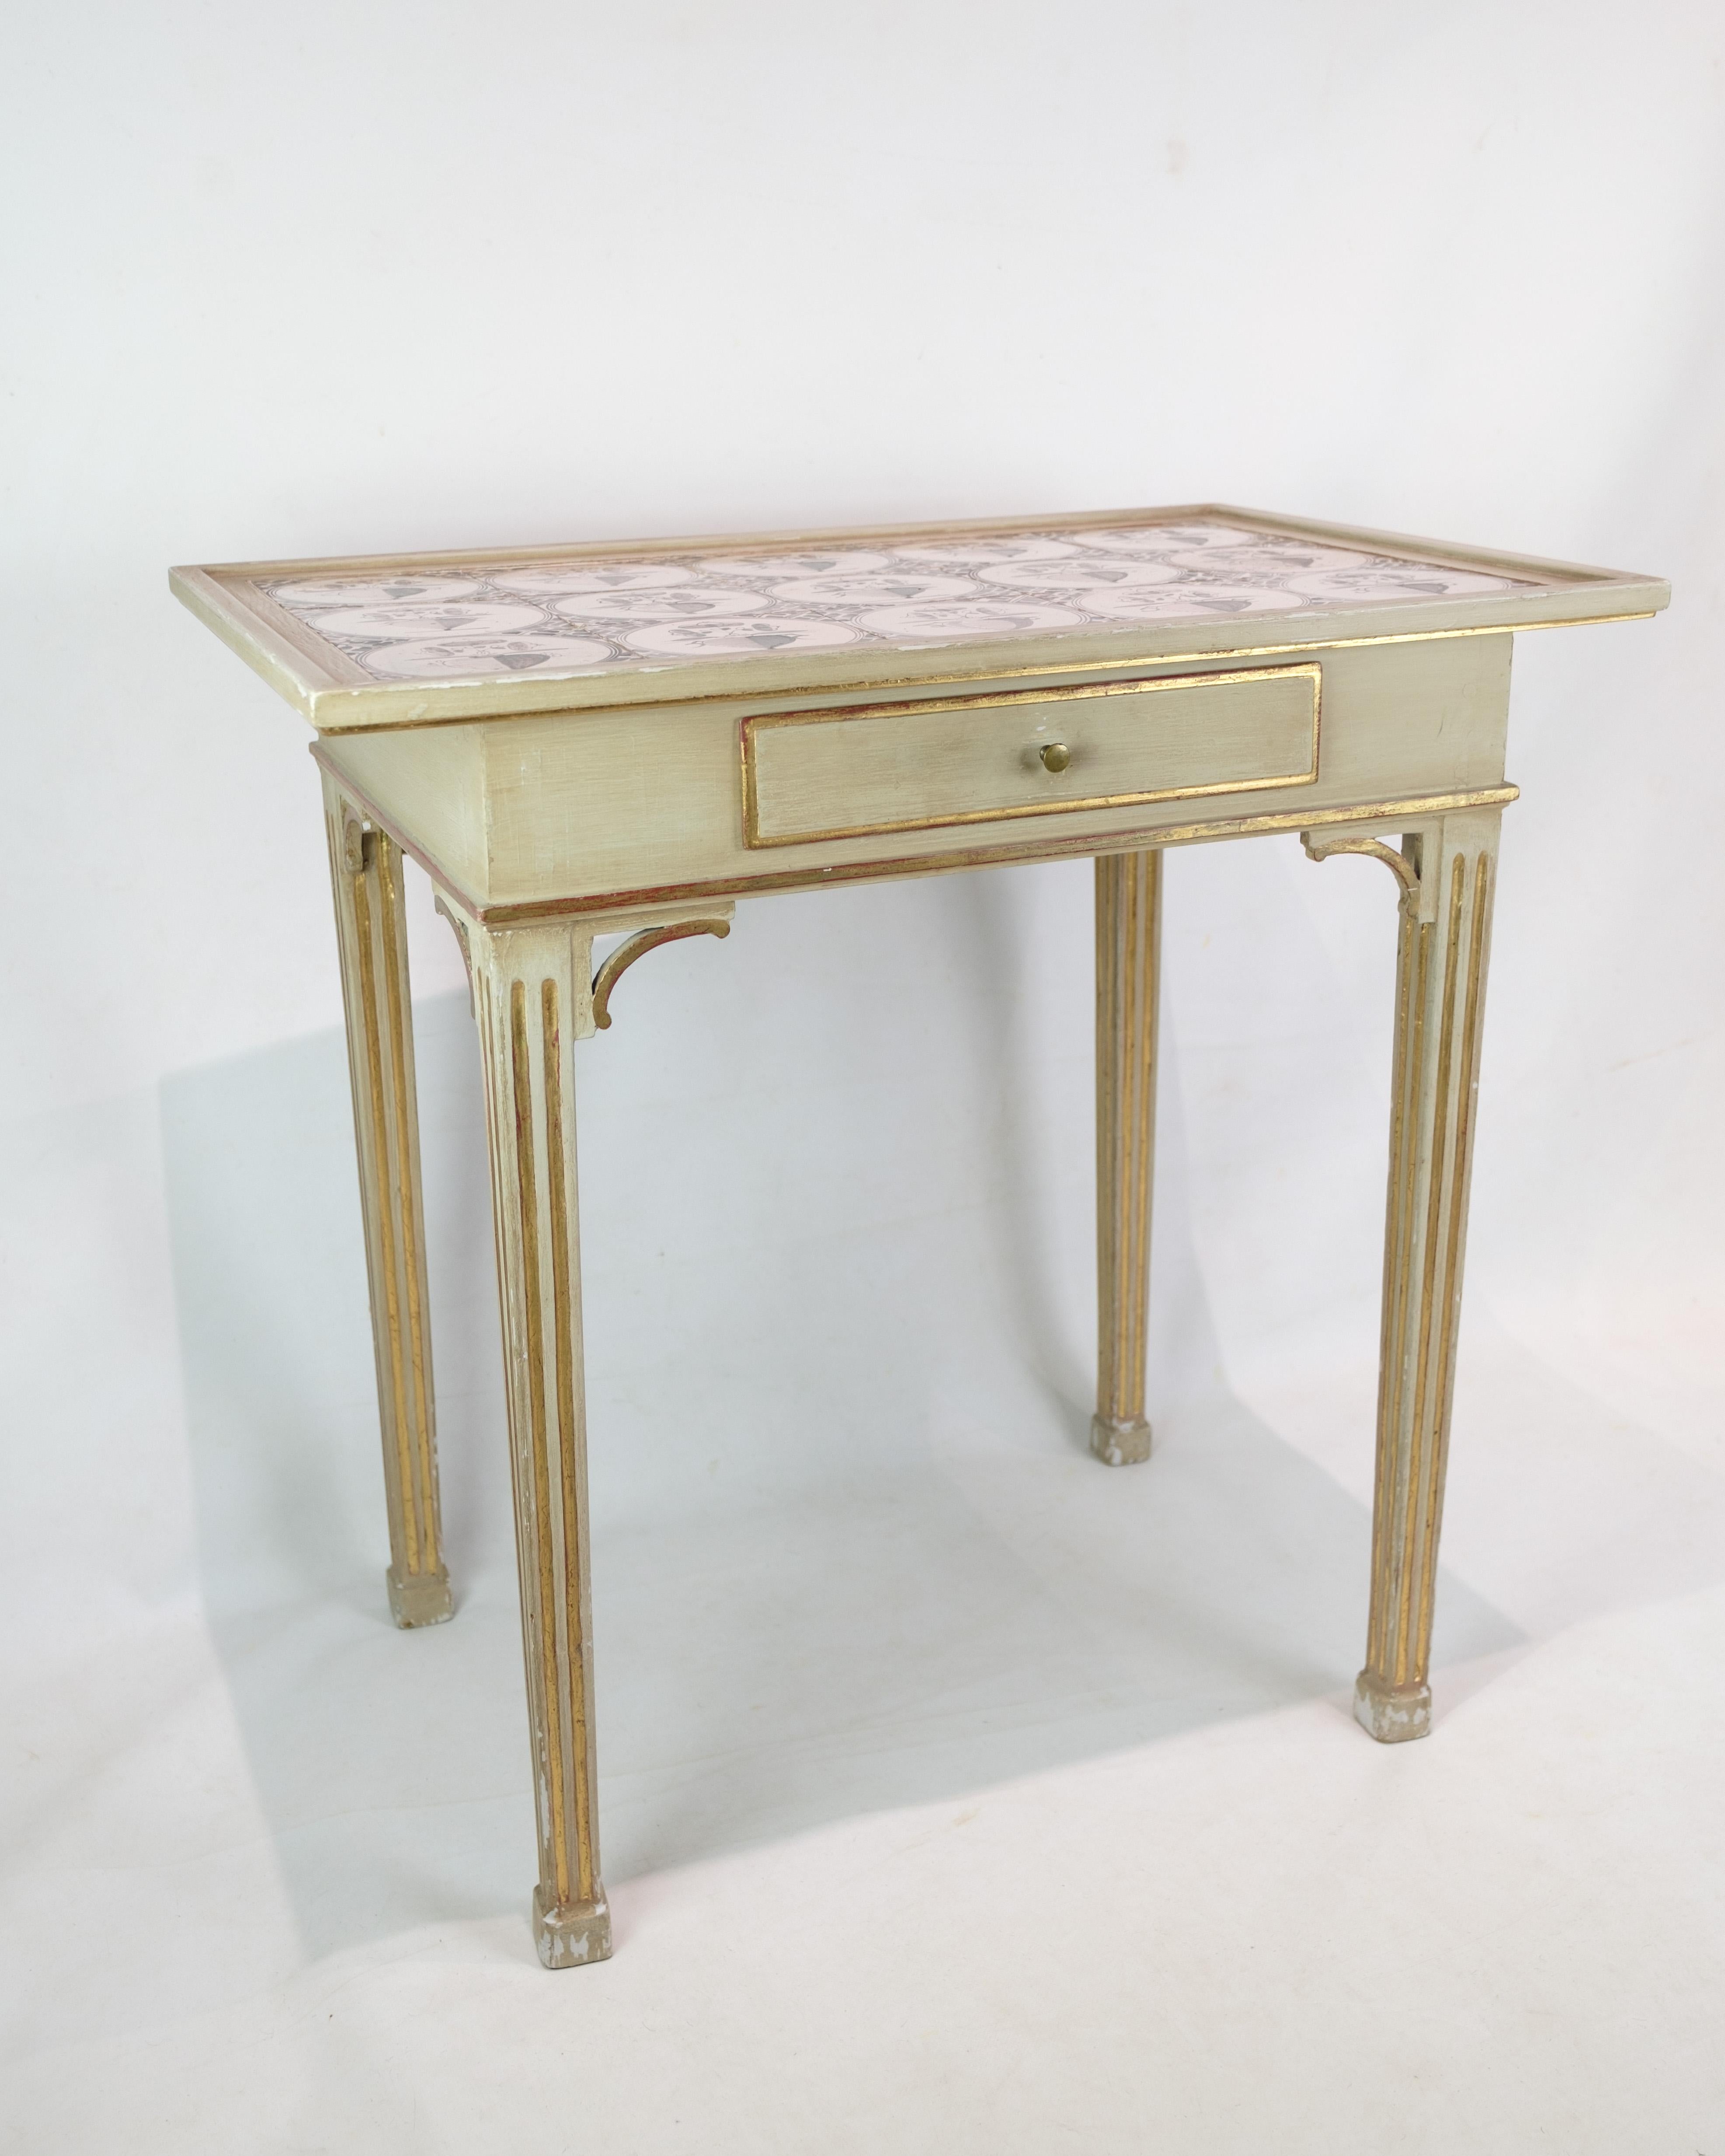 Dieser Tisch aus bemalten Kacheln repräsentiert ein bedeutendes Erbe handwerklicher Eleganz und historischer Raffinesse. Dieser Tisch im unverwechselbaren Gustavianischen und Louis-XVI-Stil ist ein zeitloses Kunstwerk aus dem 19. Jahrhundert.

Der